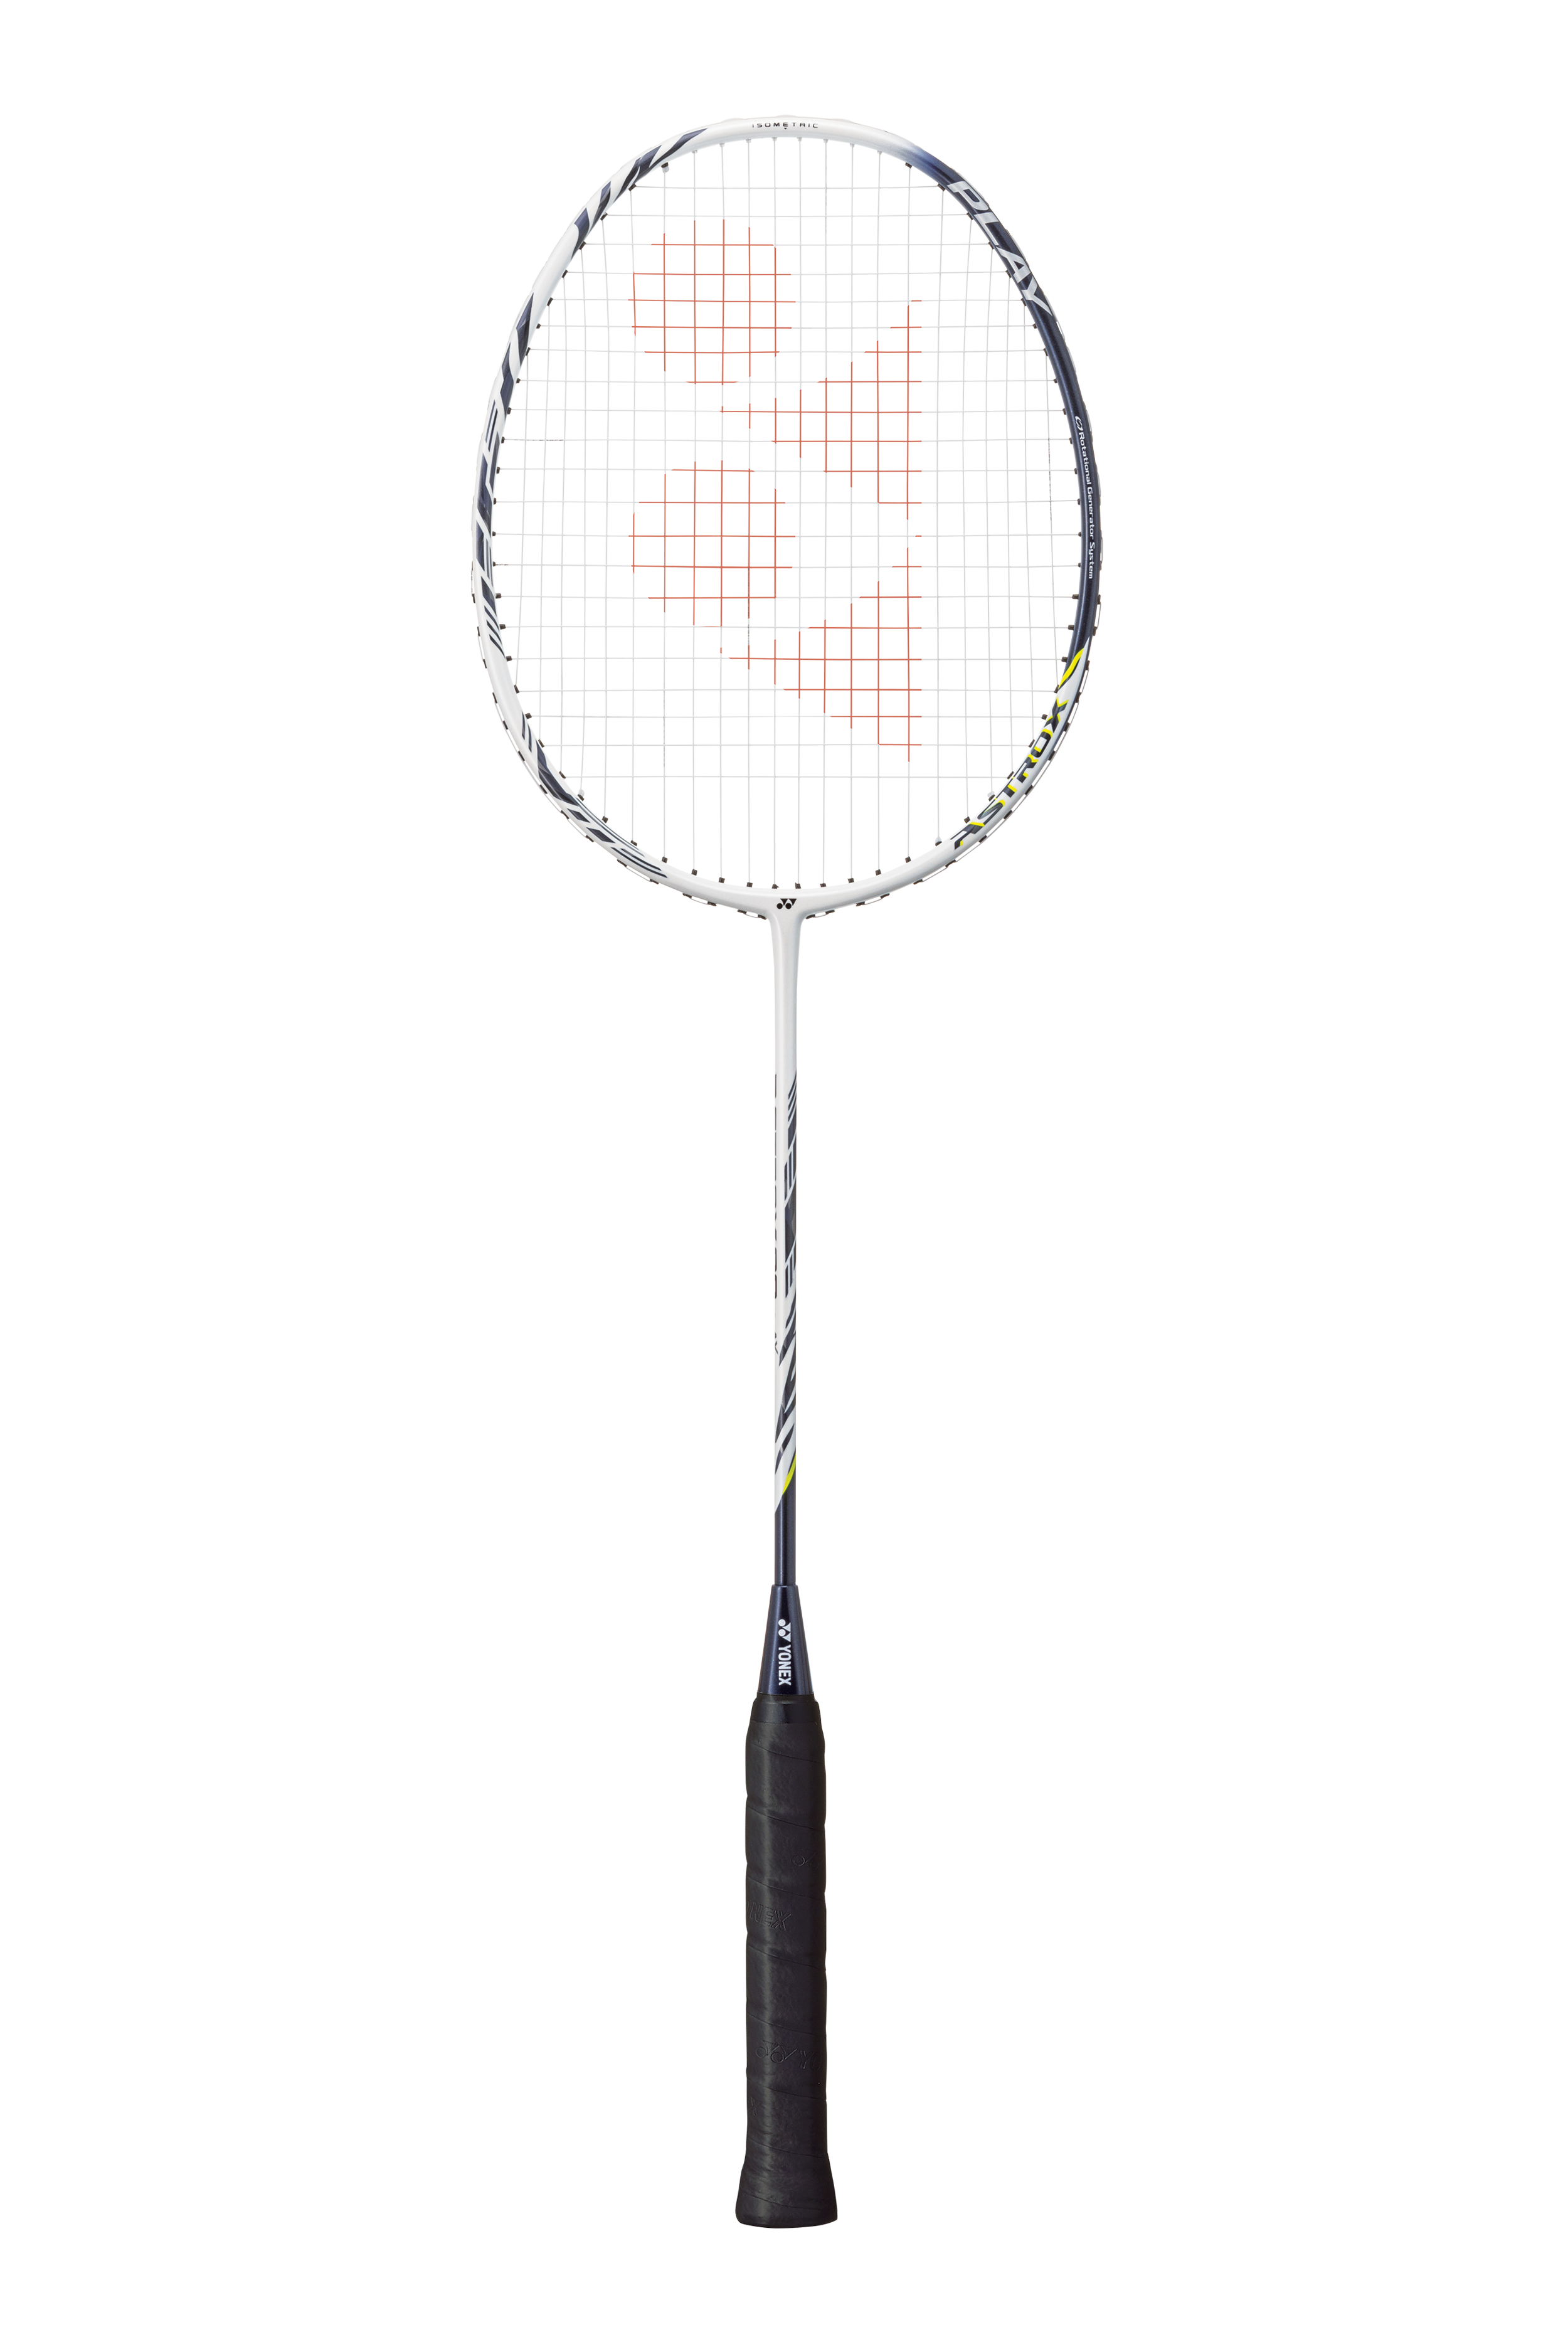 YONEX ASTROX 99 Play Badminton Racquet White Tiger AX99PL 4UG5, Strung